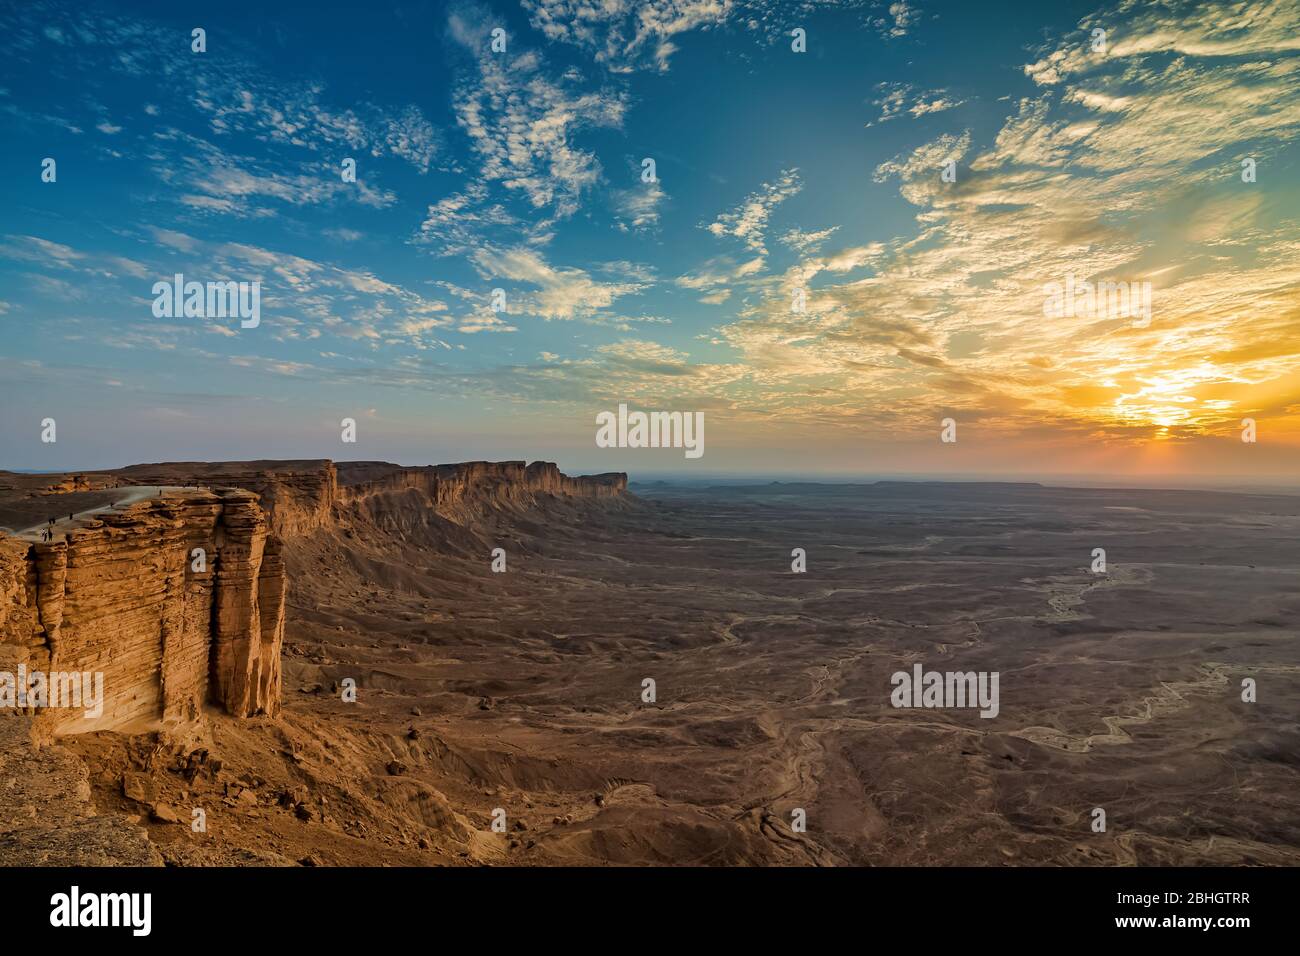 Edge of the World, un site naturel et une destination touristique populaire près de Riyad -Arabie Saoudite. Banque D'Images